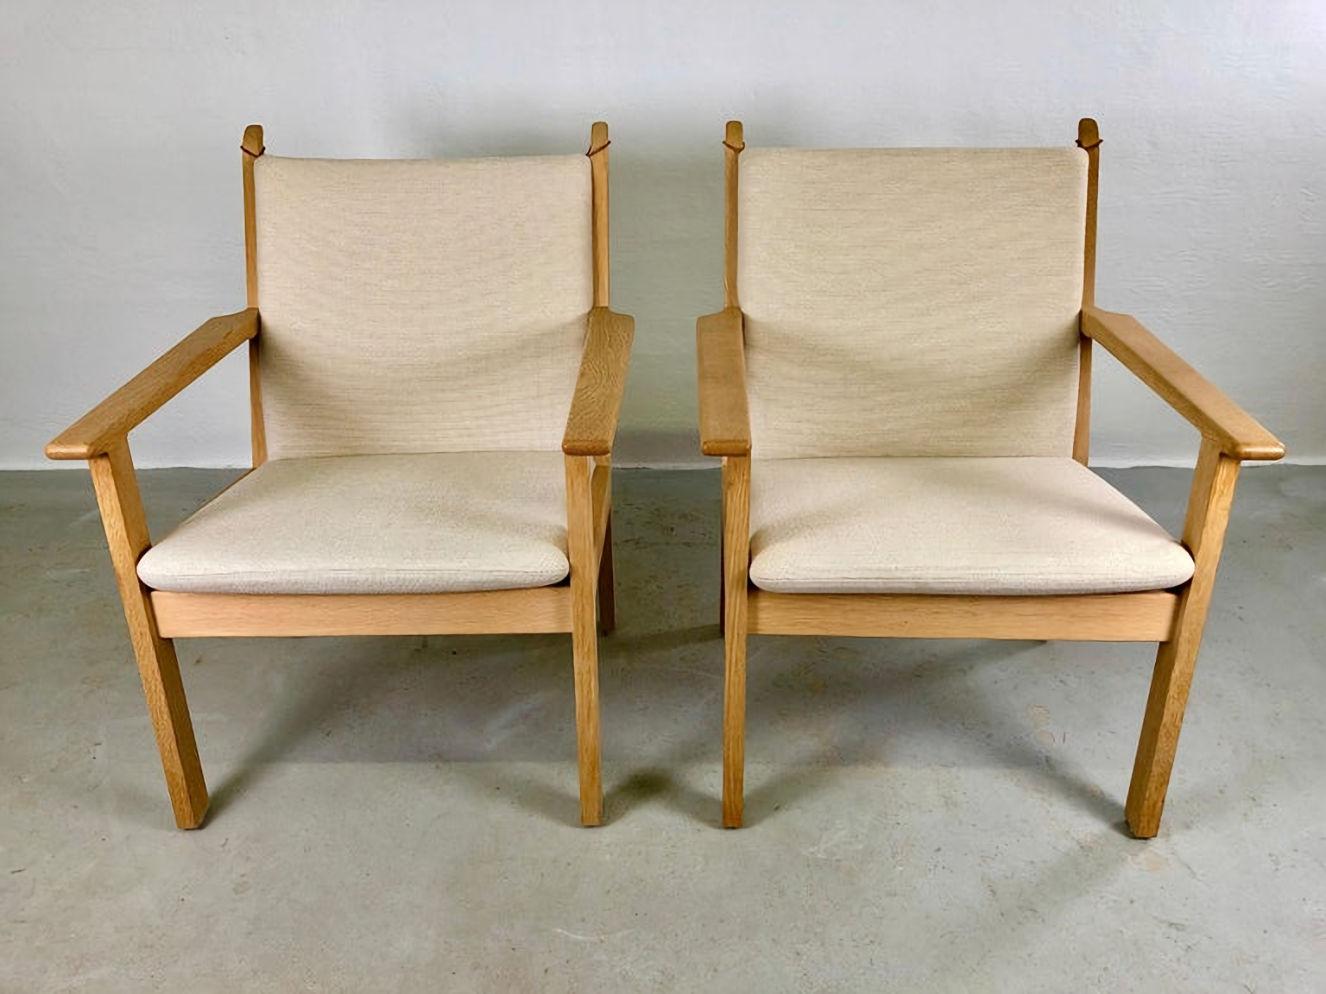 Ensemble de deux chaises longues danoises Hans J. Wegner en chêne et tissu par GETAMA

Le confortable modèle de chaise longue GE-284 a été conçu par Hans J. Elegner en 1984. Son design simple mais élégant se caractérise par un cadre en chêne solide